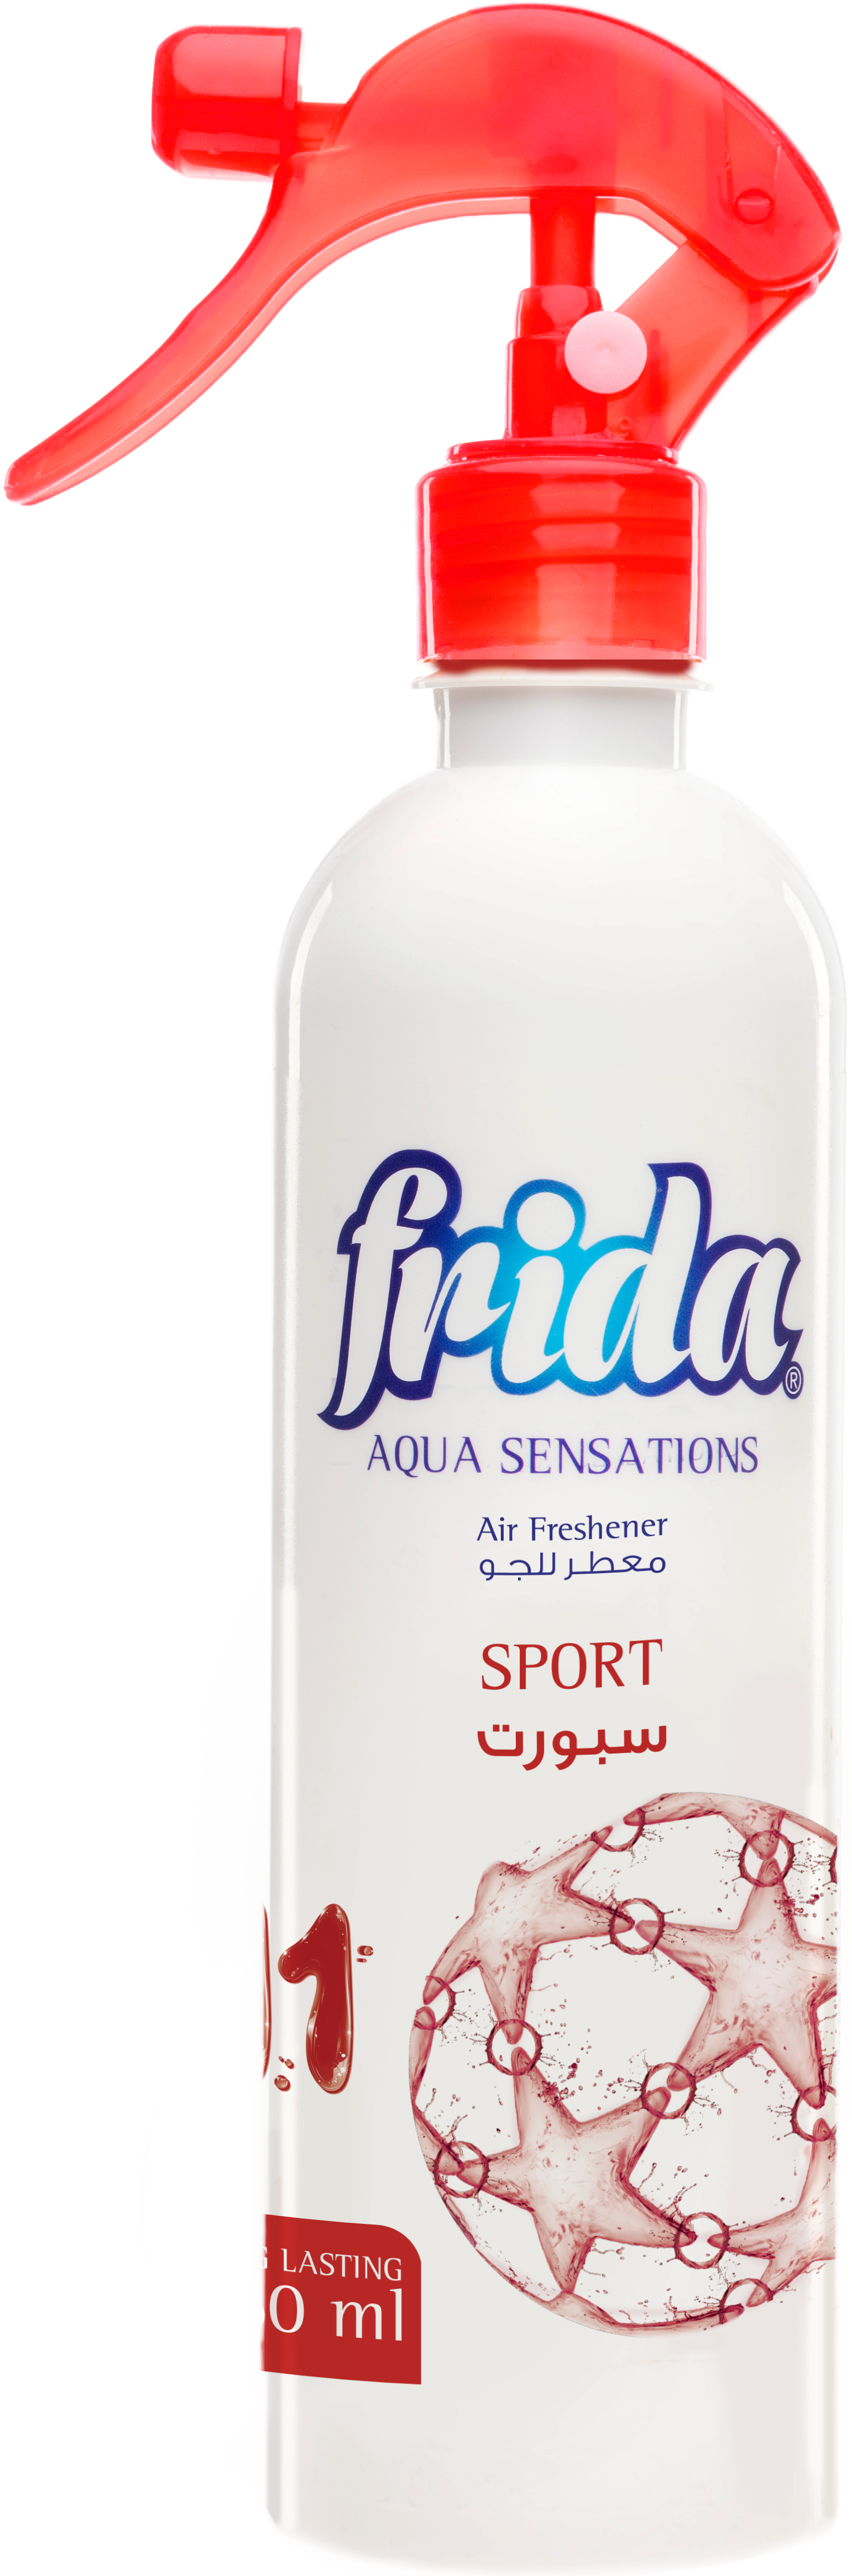 Frida Aqua Sensations "Sport"